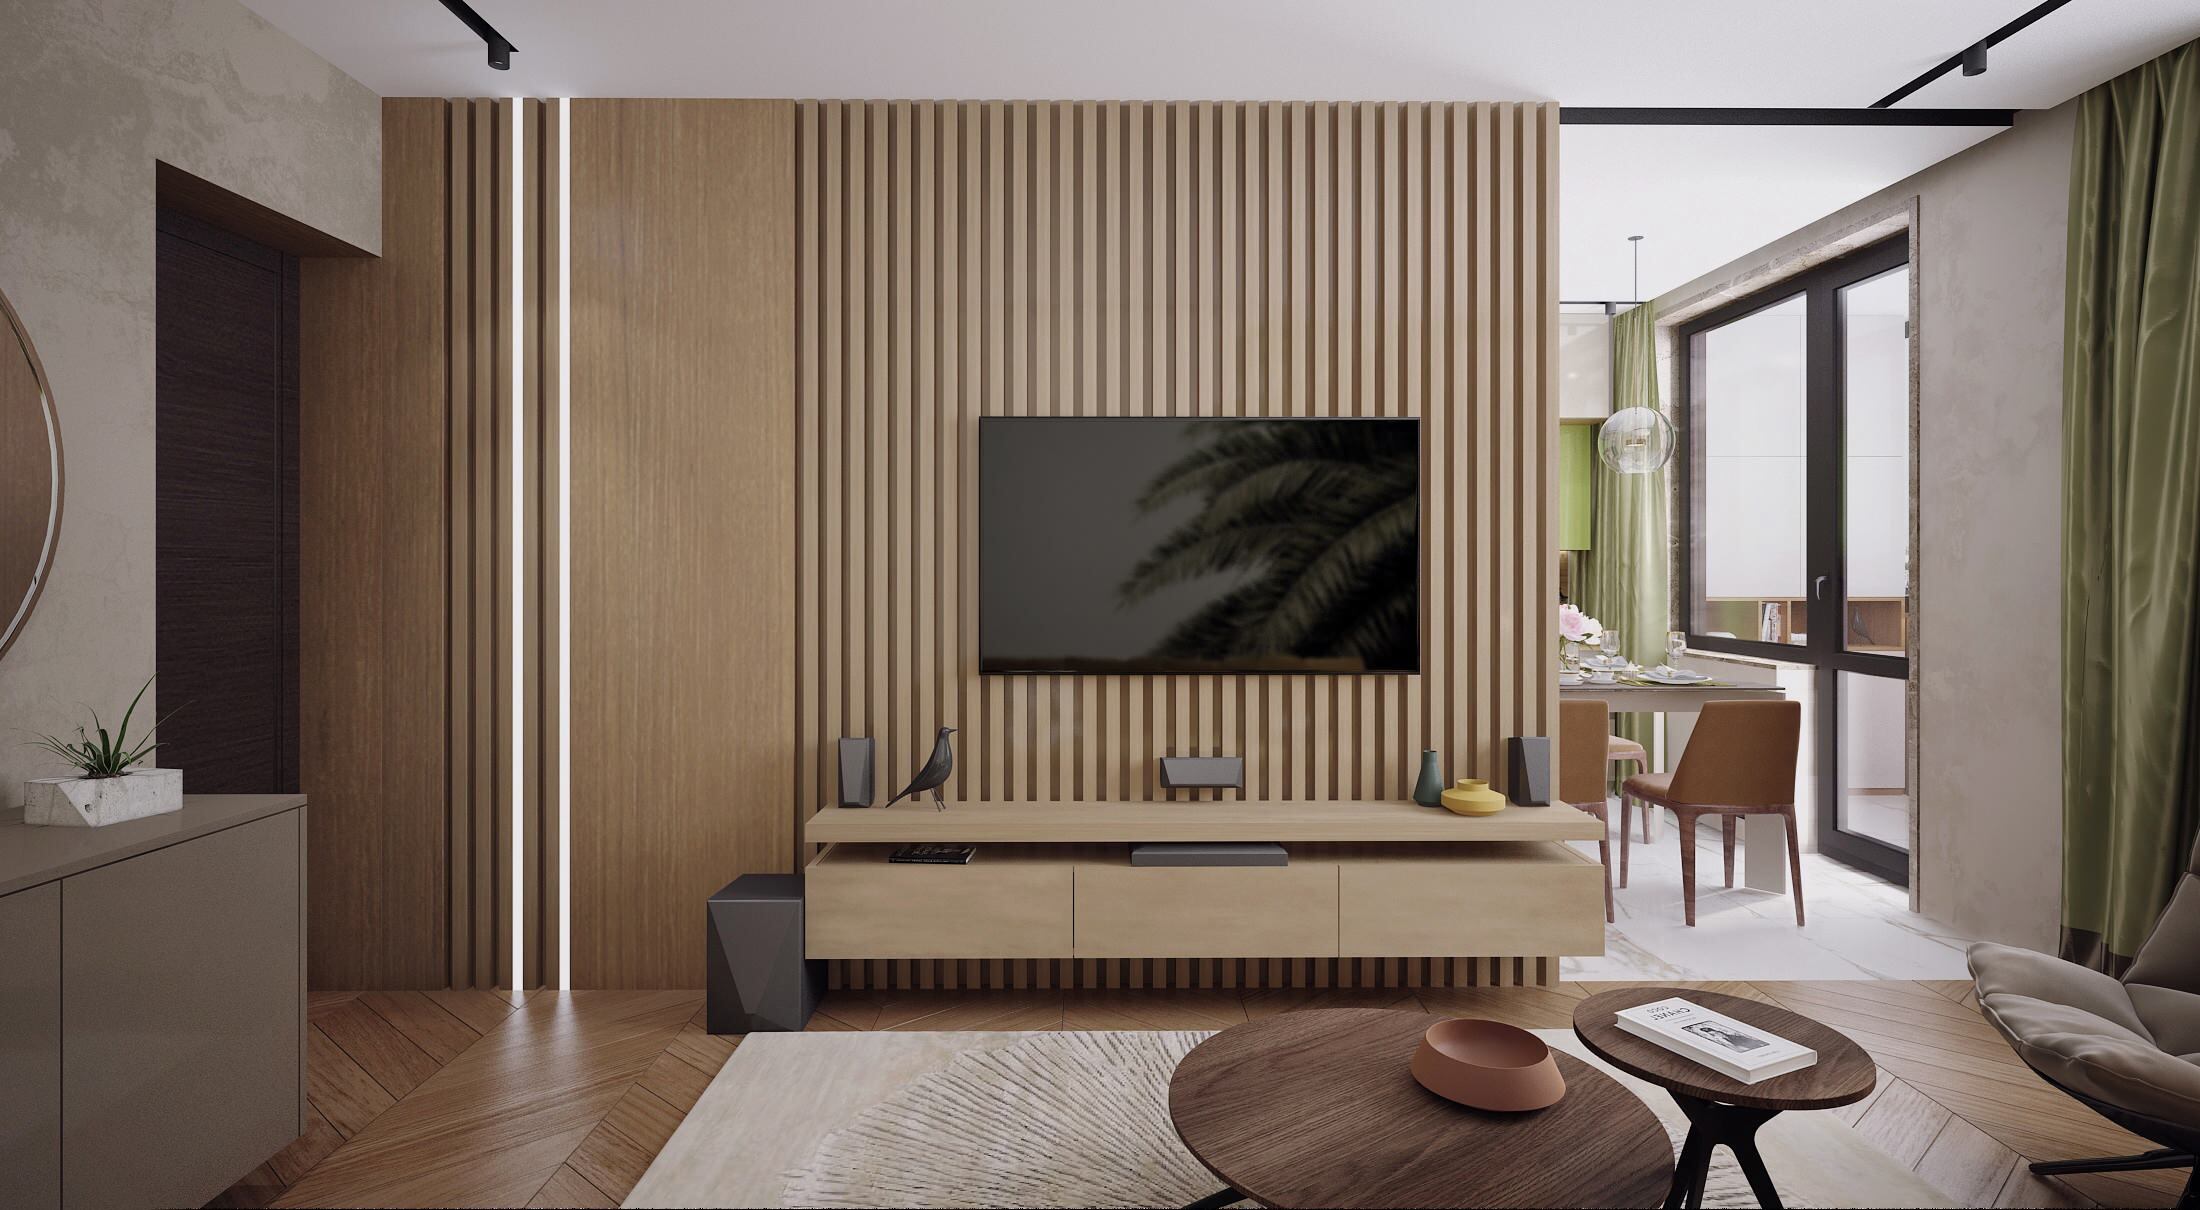 Интерьер гостиной cтеной с телевизором, телевизором на рейках, керамогранитом на стену с телевизором и вертикальными жалюзи